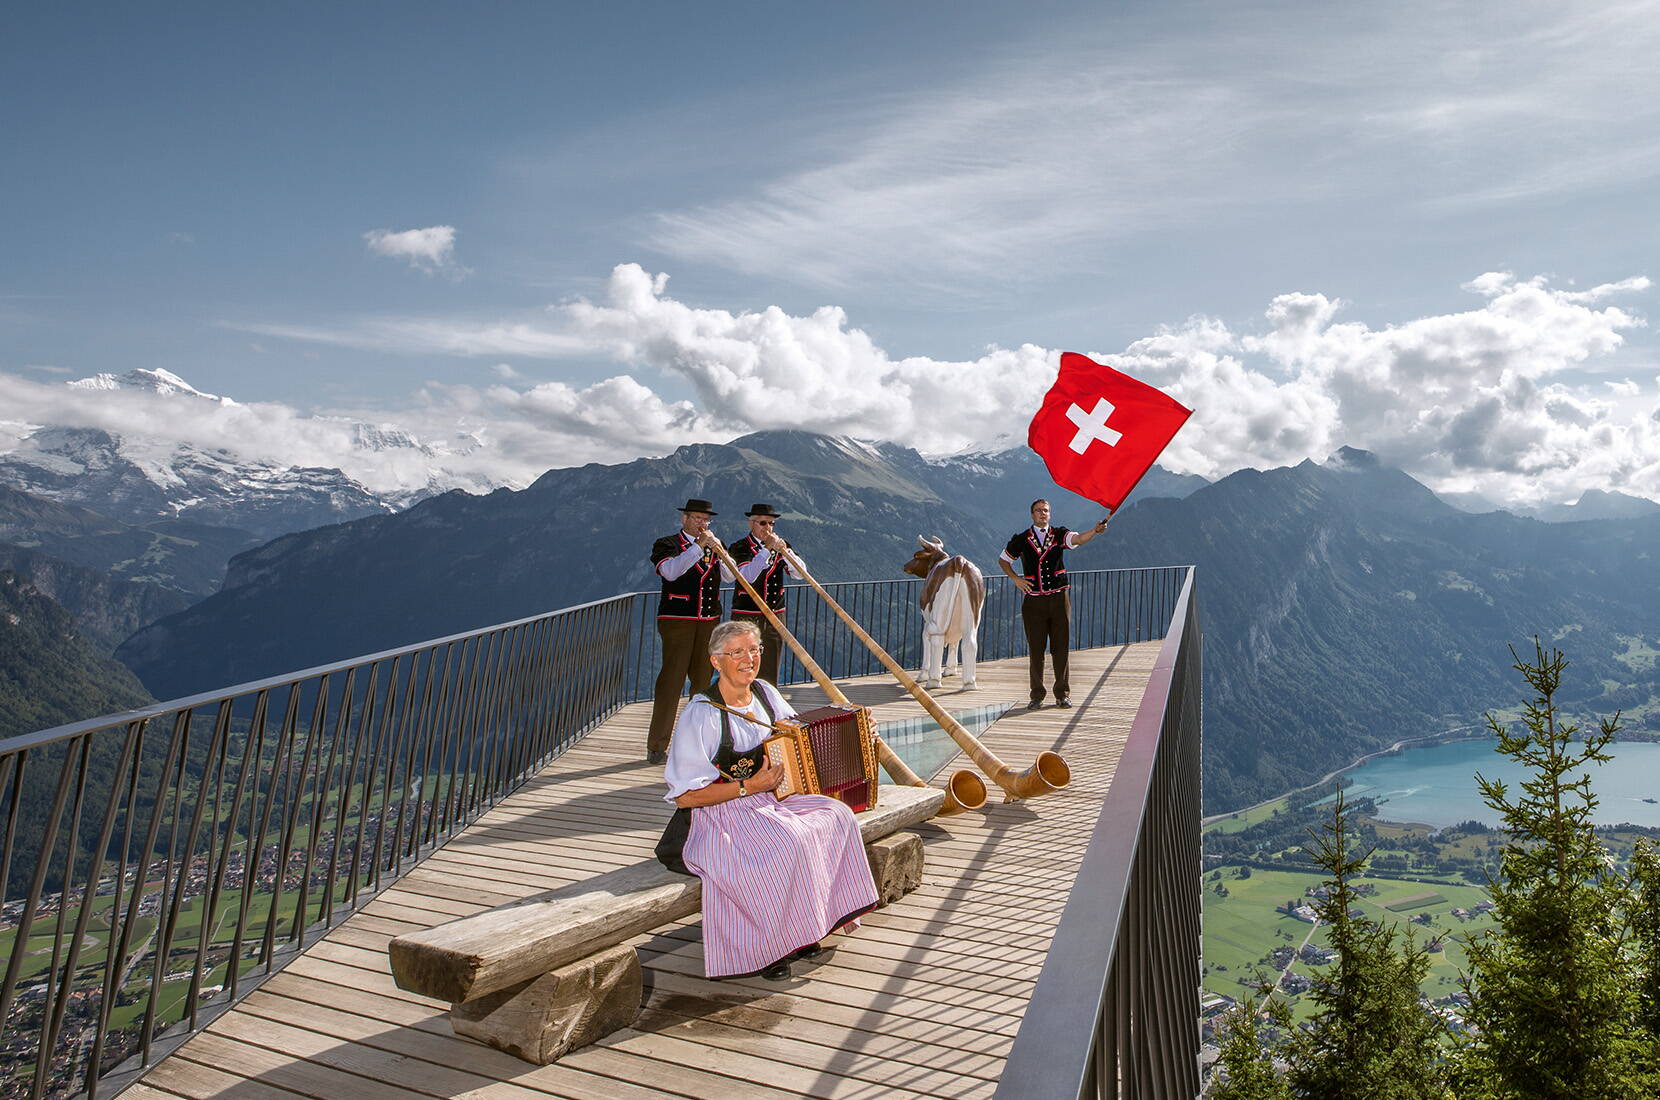 Il ristorante panoramico Harder Kulm si trova in alto sopra Interlaken, a 1.322 metri sul livello del mare. Per raggiungere l'Harder Kulm con la funicolare da Interlaken ci vogliono solo 10 minuti. La piattaforma panoramica offre una vista unica su Eiger, Mönch e Jungfrau, oltre che sui laghi di Thun e Brienz.